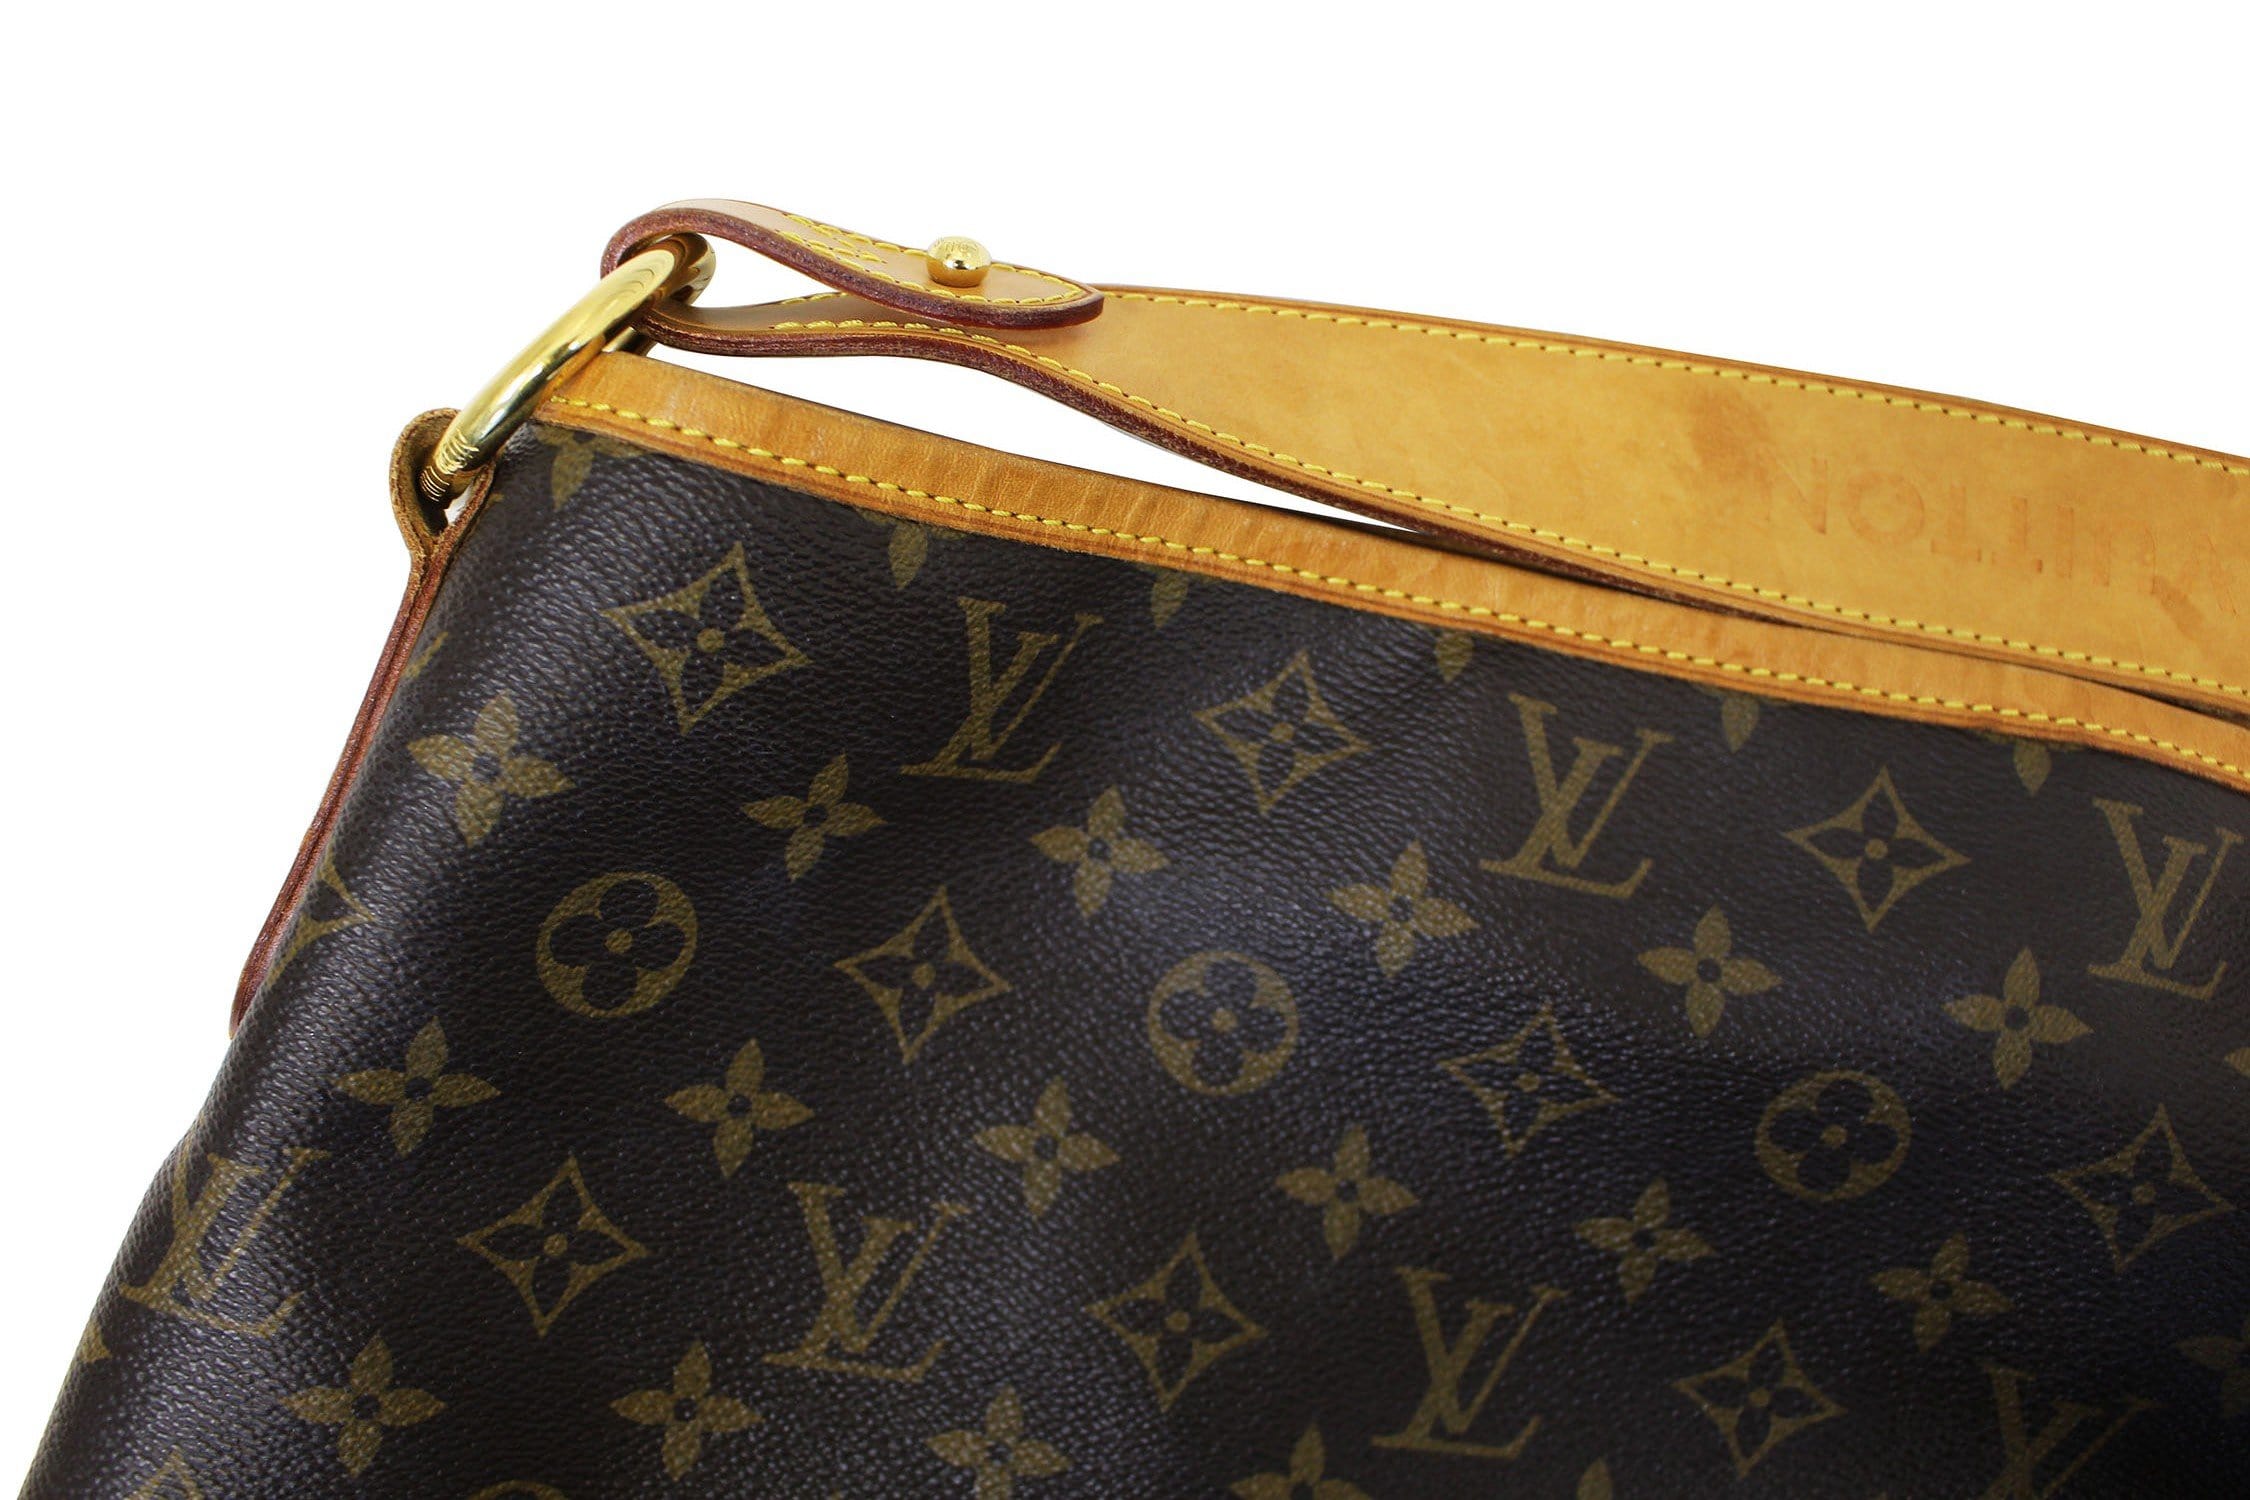 Authentic Louis Vuitton Monogram Delightful PM Shoulder Bag M40352